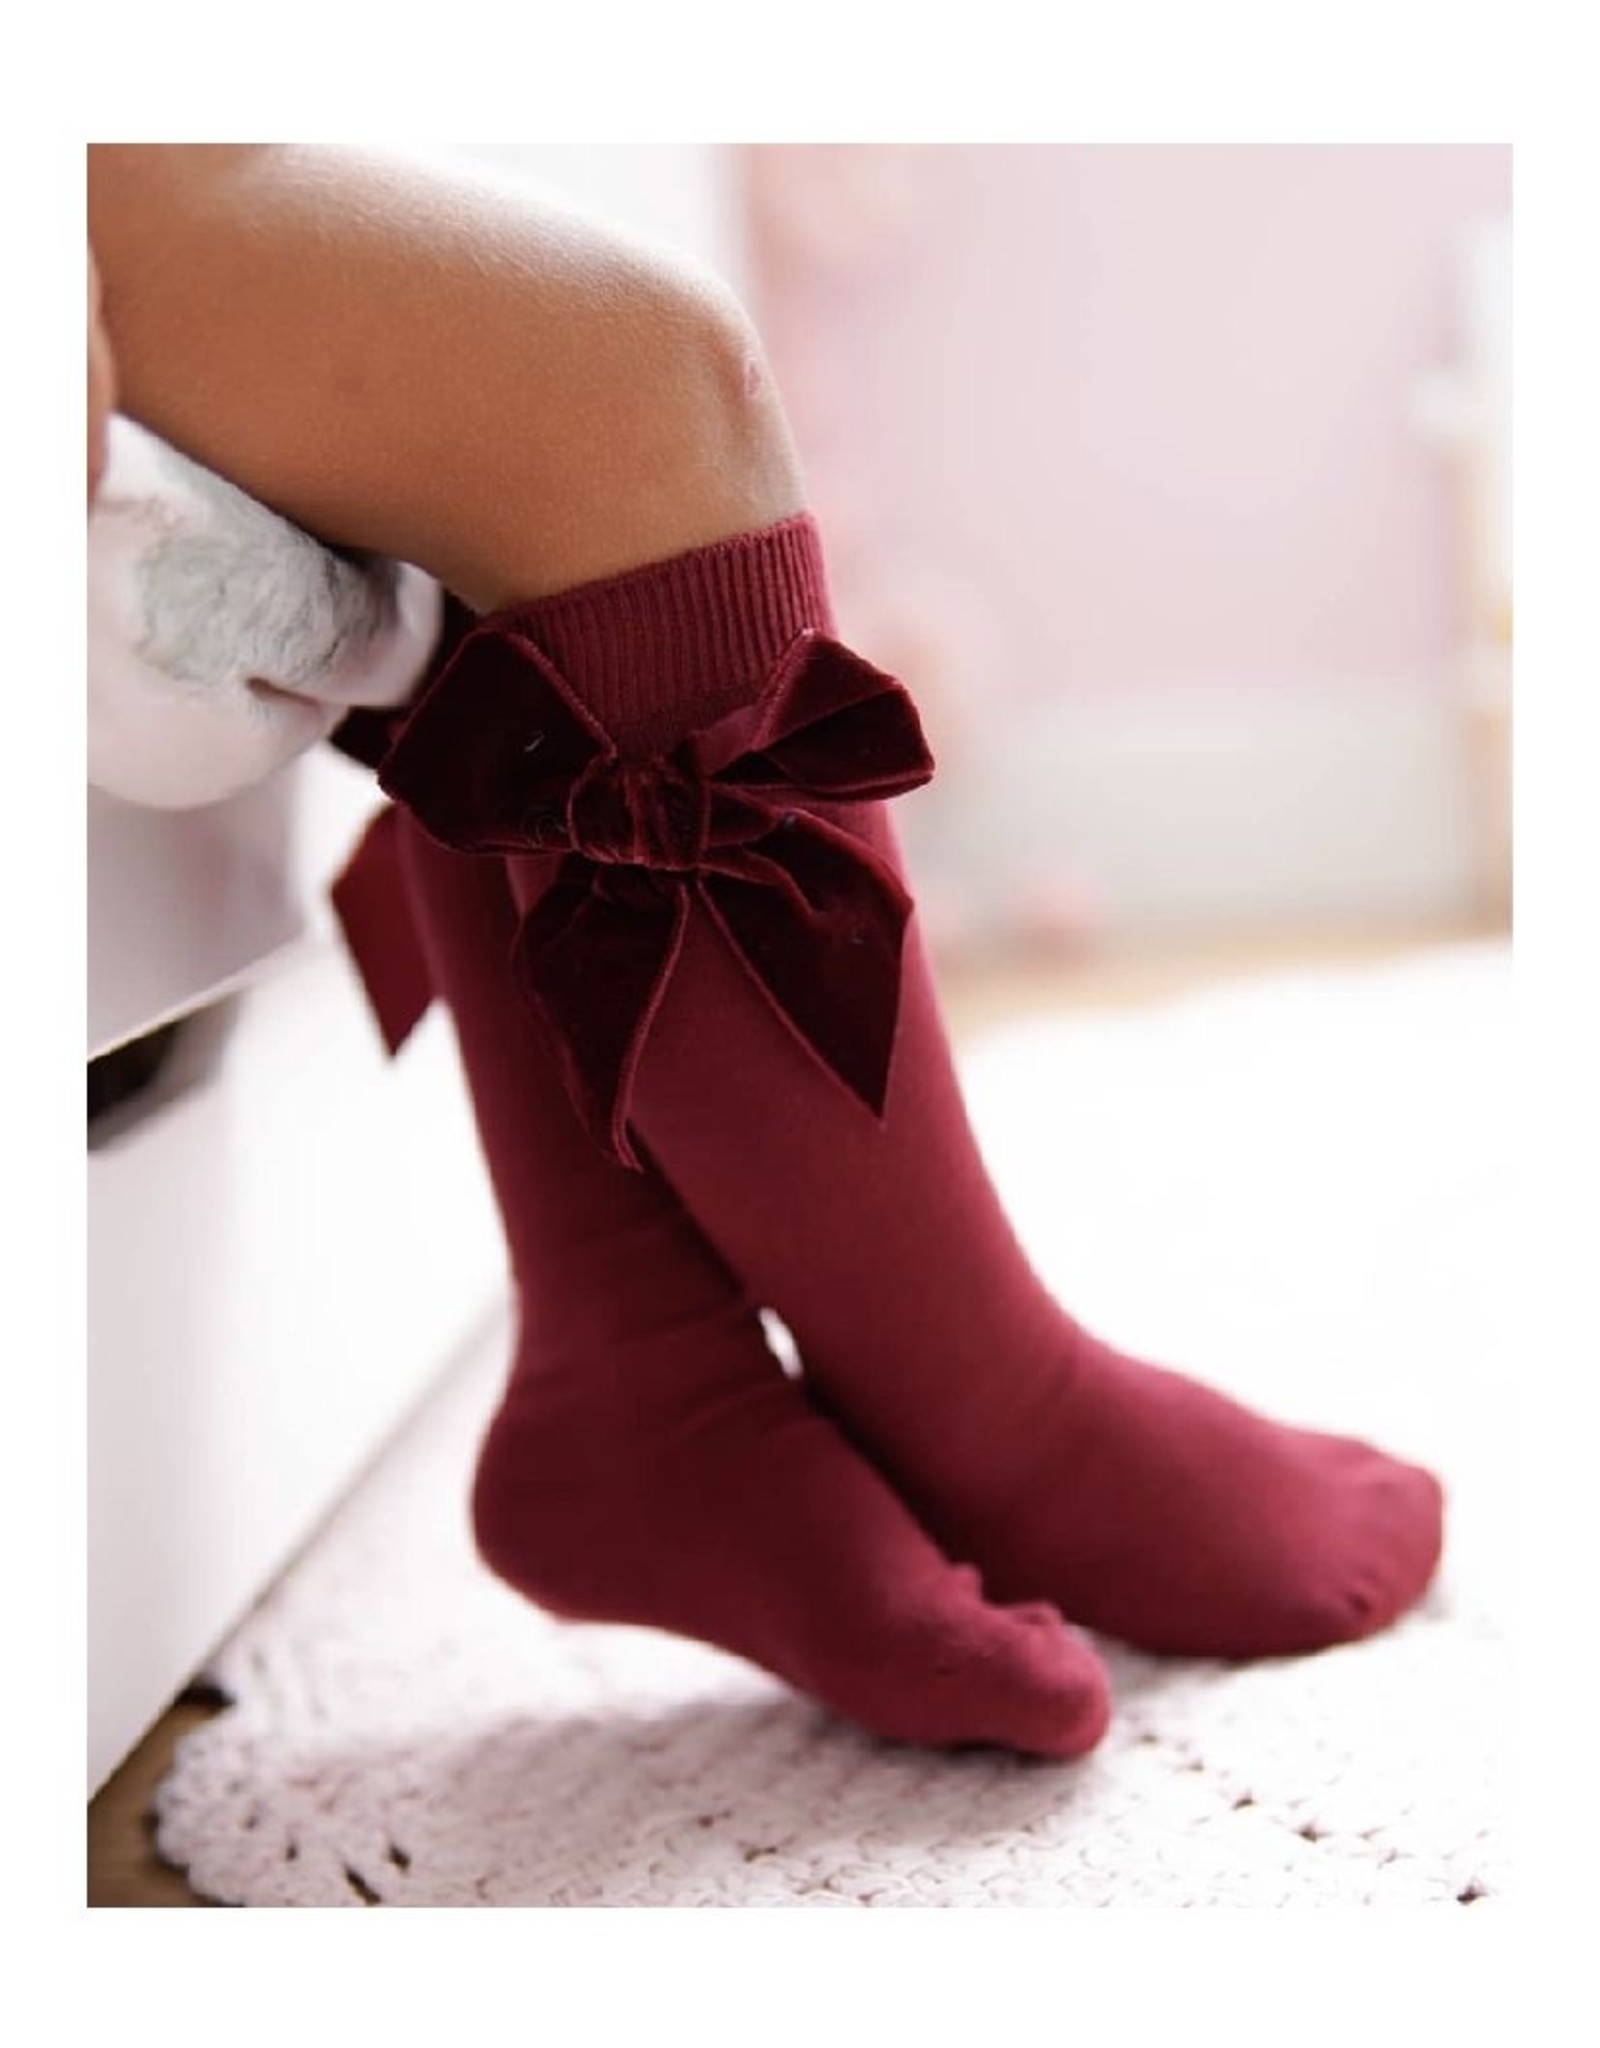 CONDOR Garnet Velvet Bow Socks